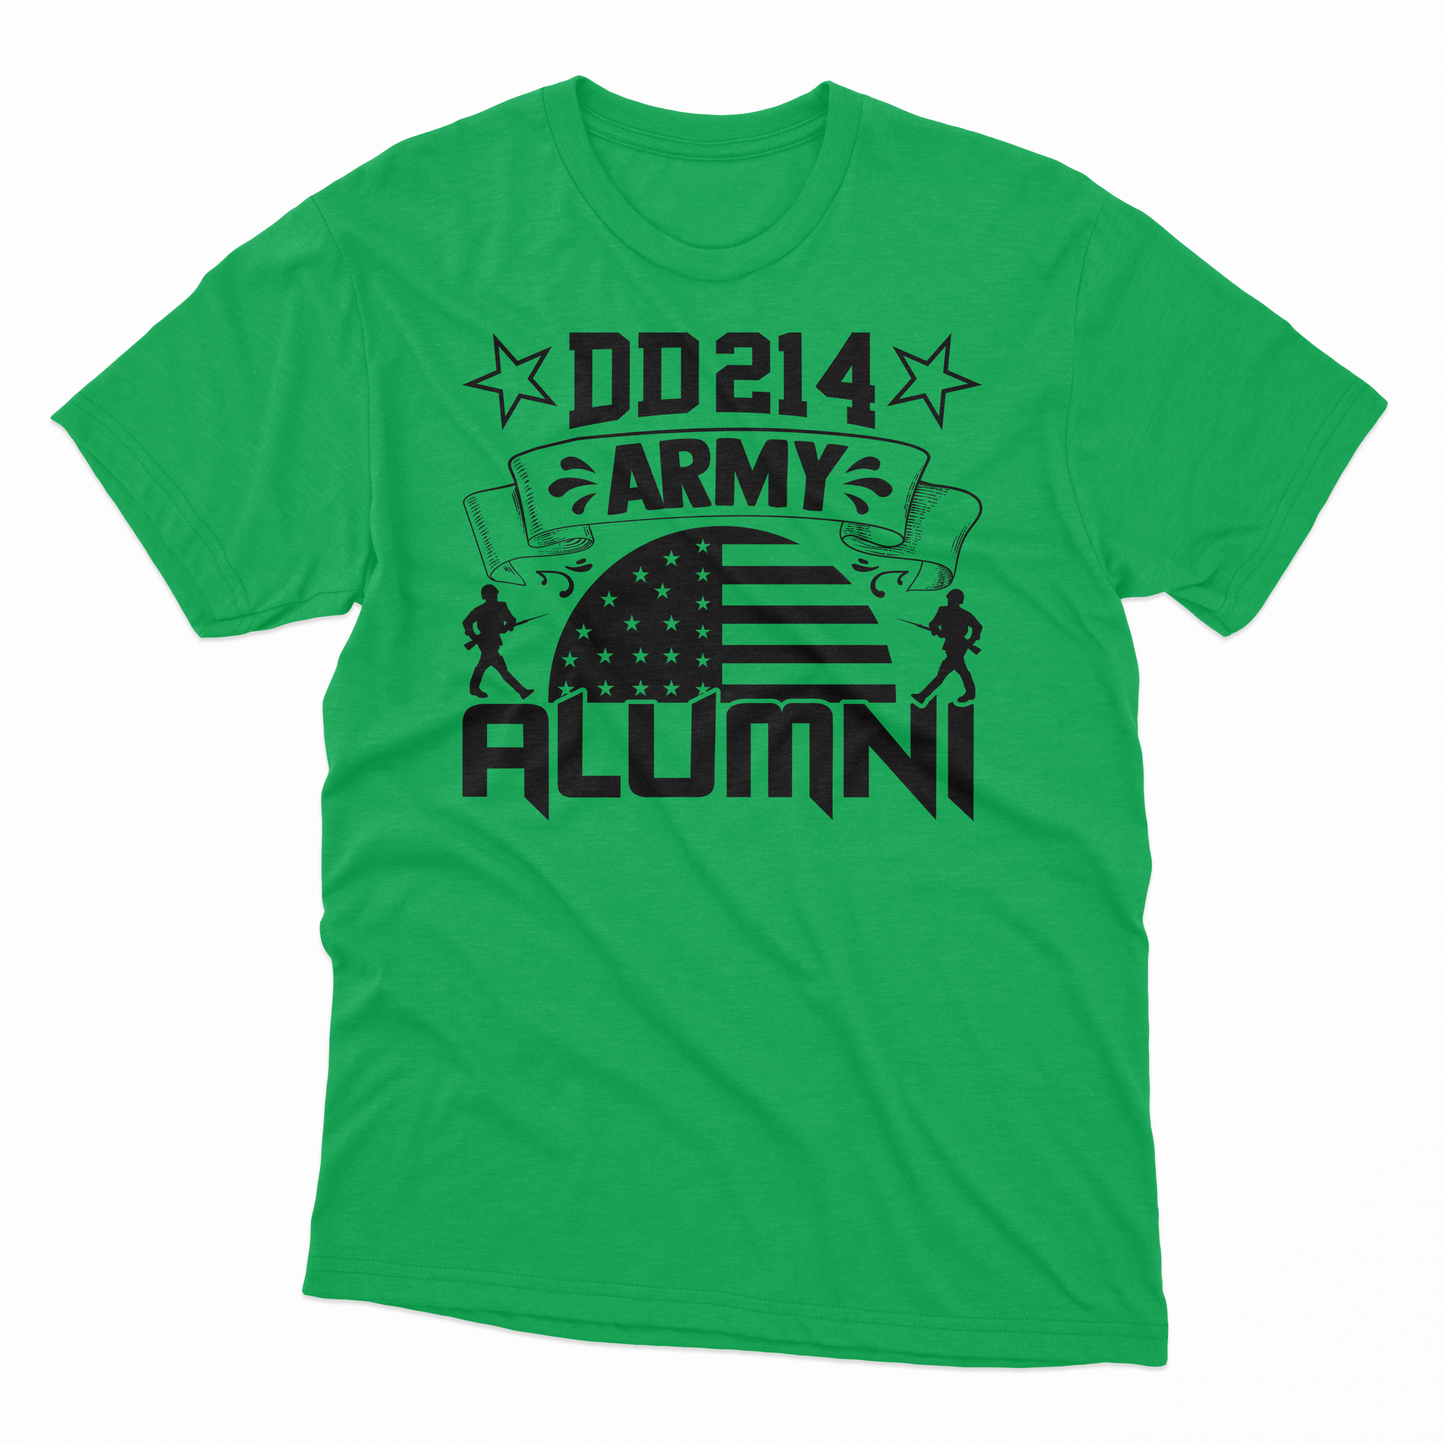 'DD214 Army Alumni' T-Shirt - Irish Green